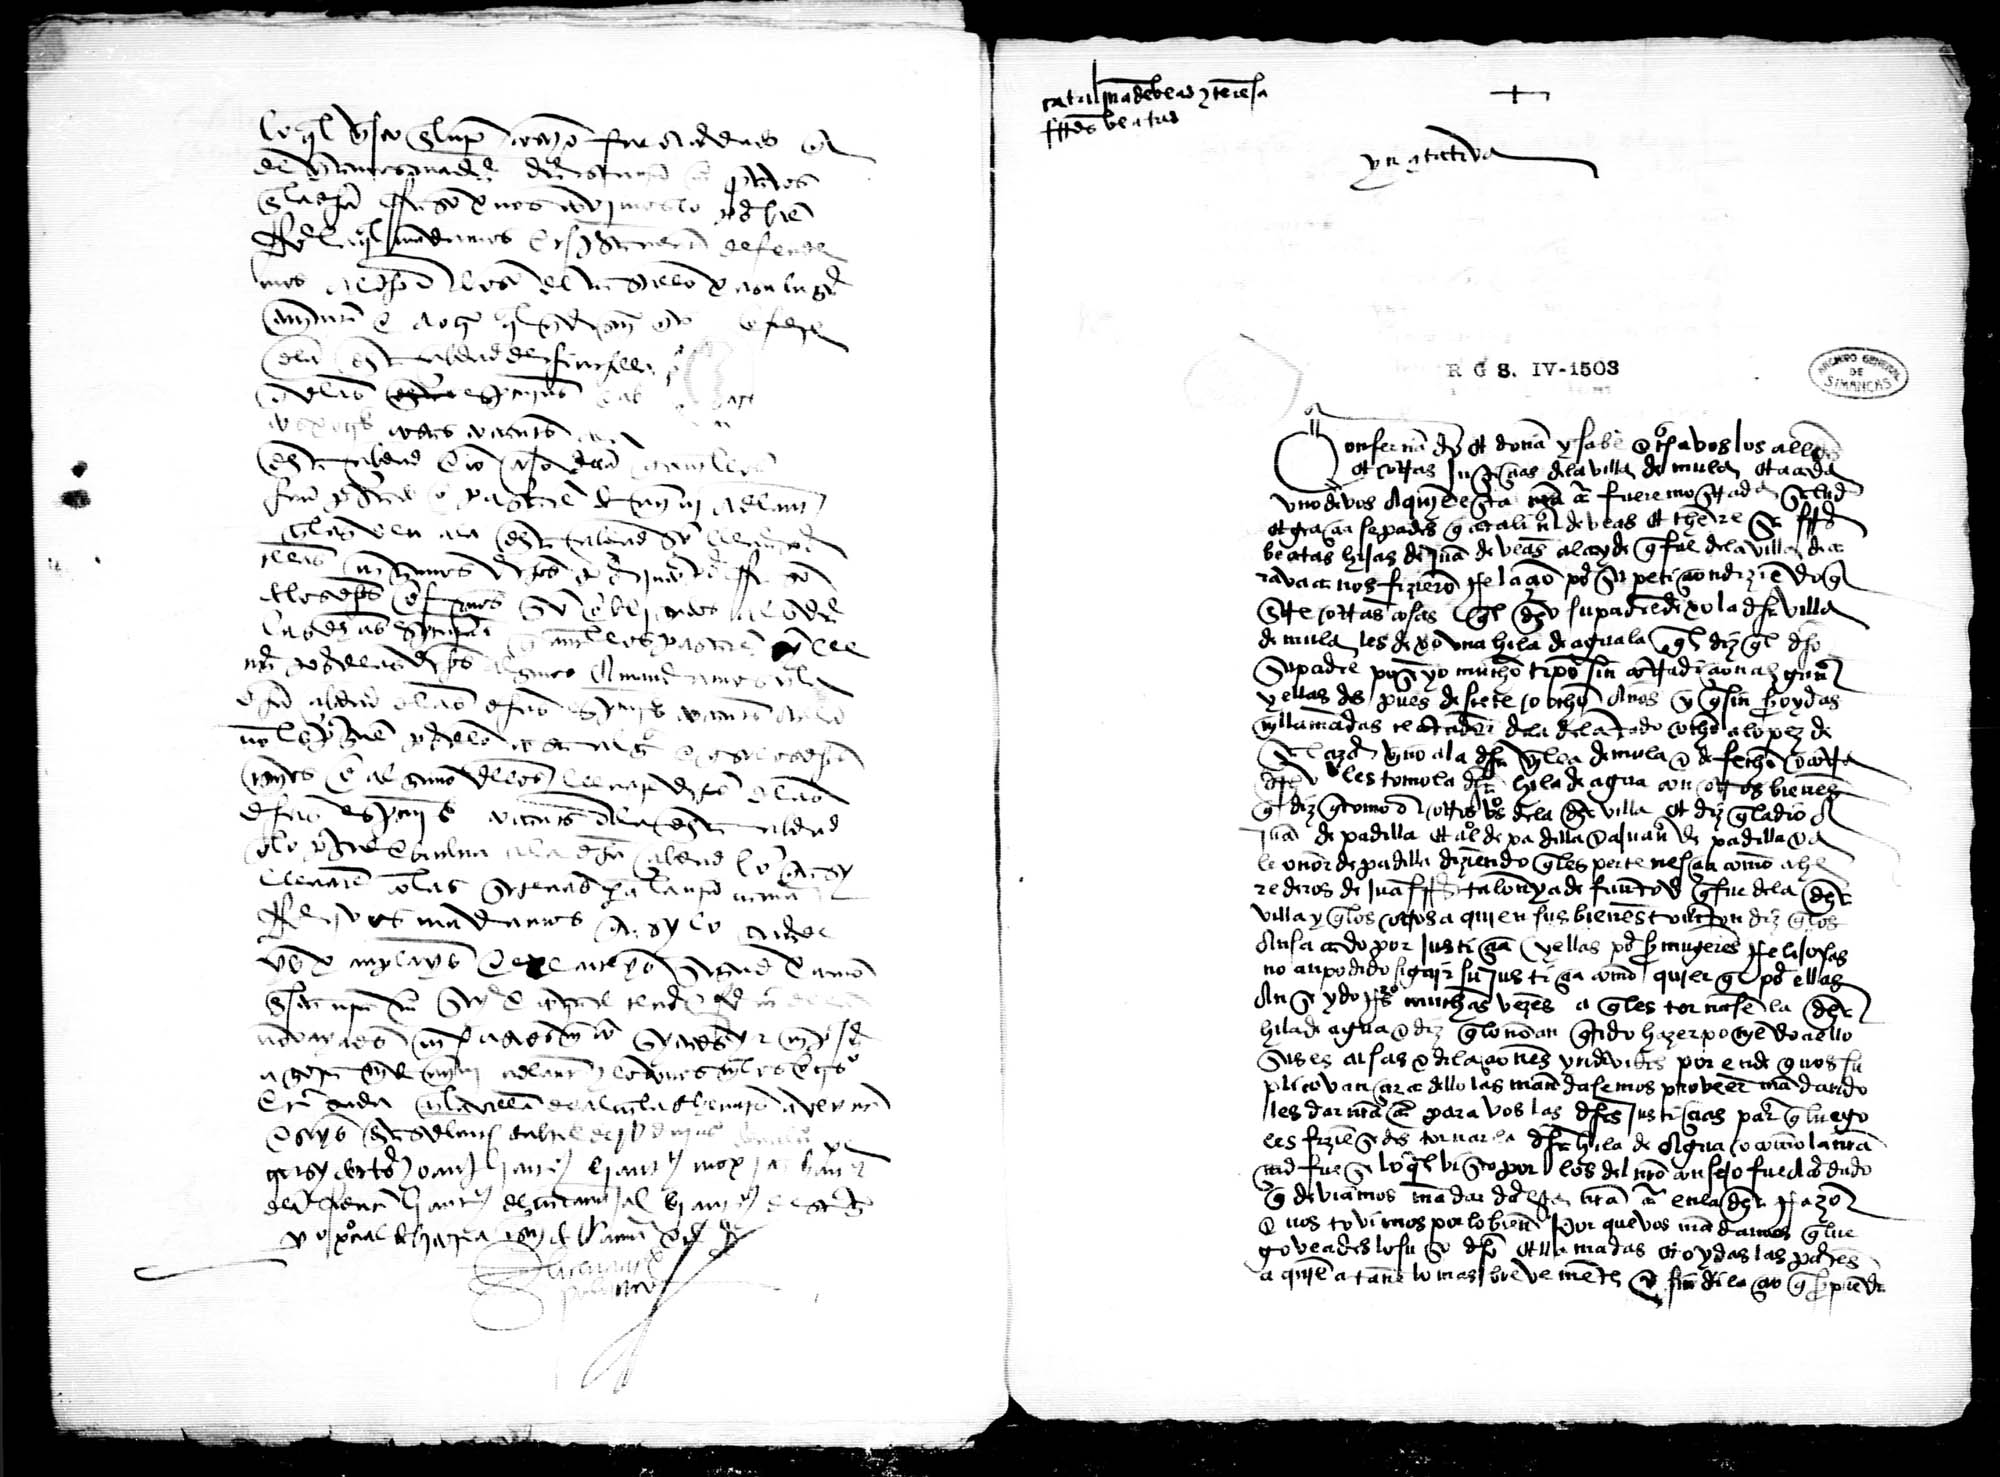 Al gobernador del Marquesado de Villena, a petición de Carlos Muñoz, procurador de la ciudad de Chinchilla, para que los escribanos de la ciudad no lleven derechos al concejo por sus escrituras.